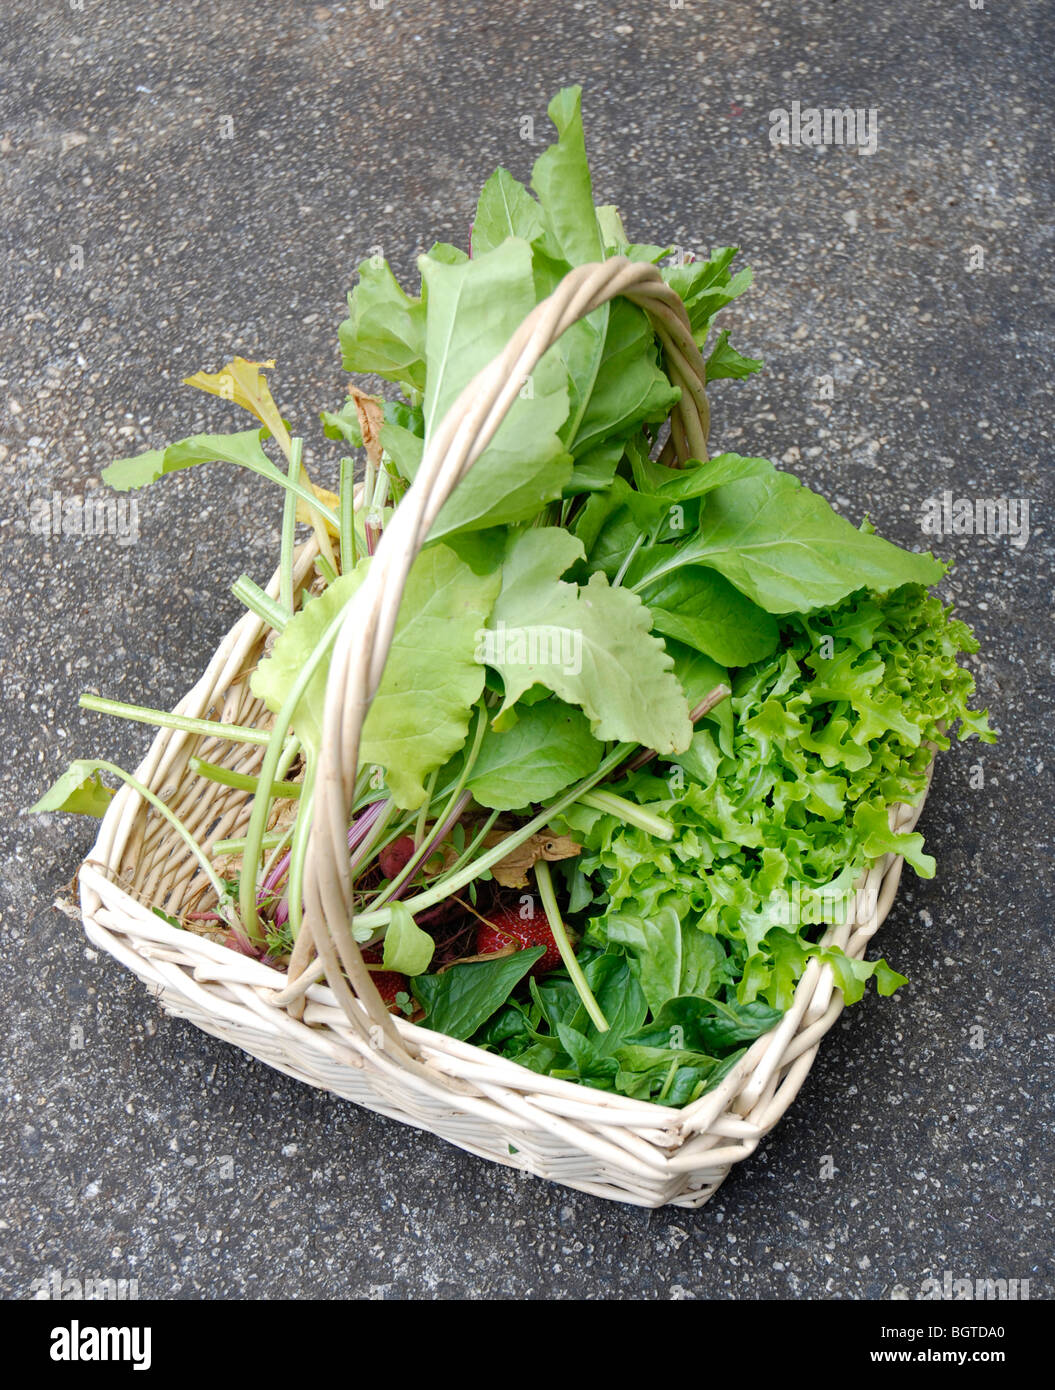 Korb voll von Produkten, die vom Garten inklusive Salat, Spinat, Erdbeeren und rote Beete. Stockfoto